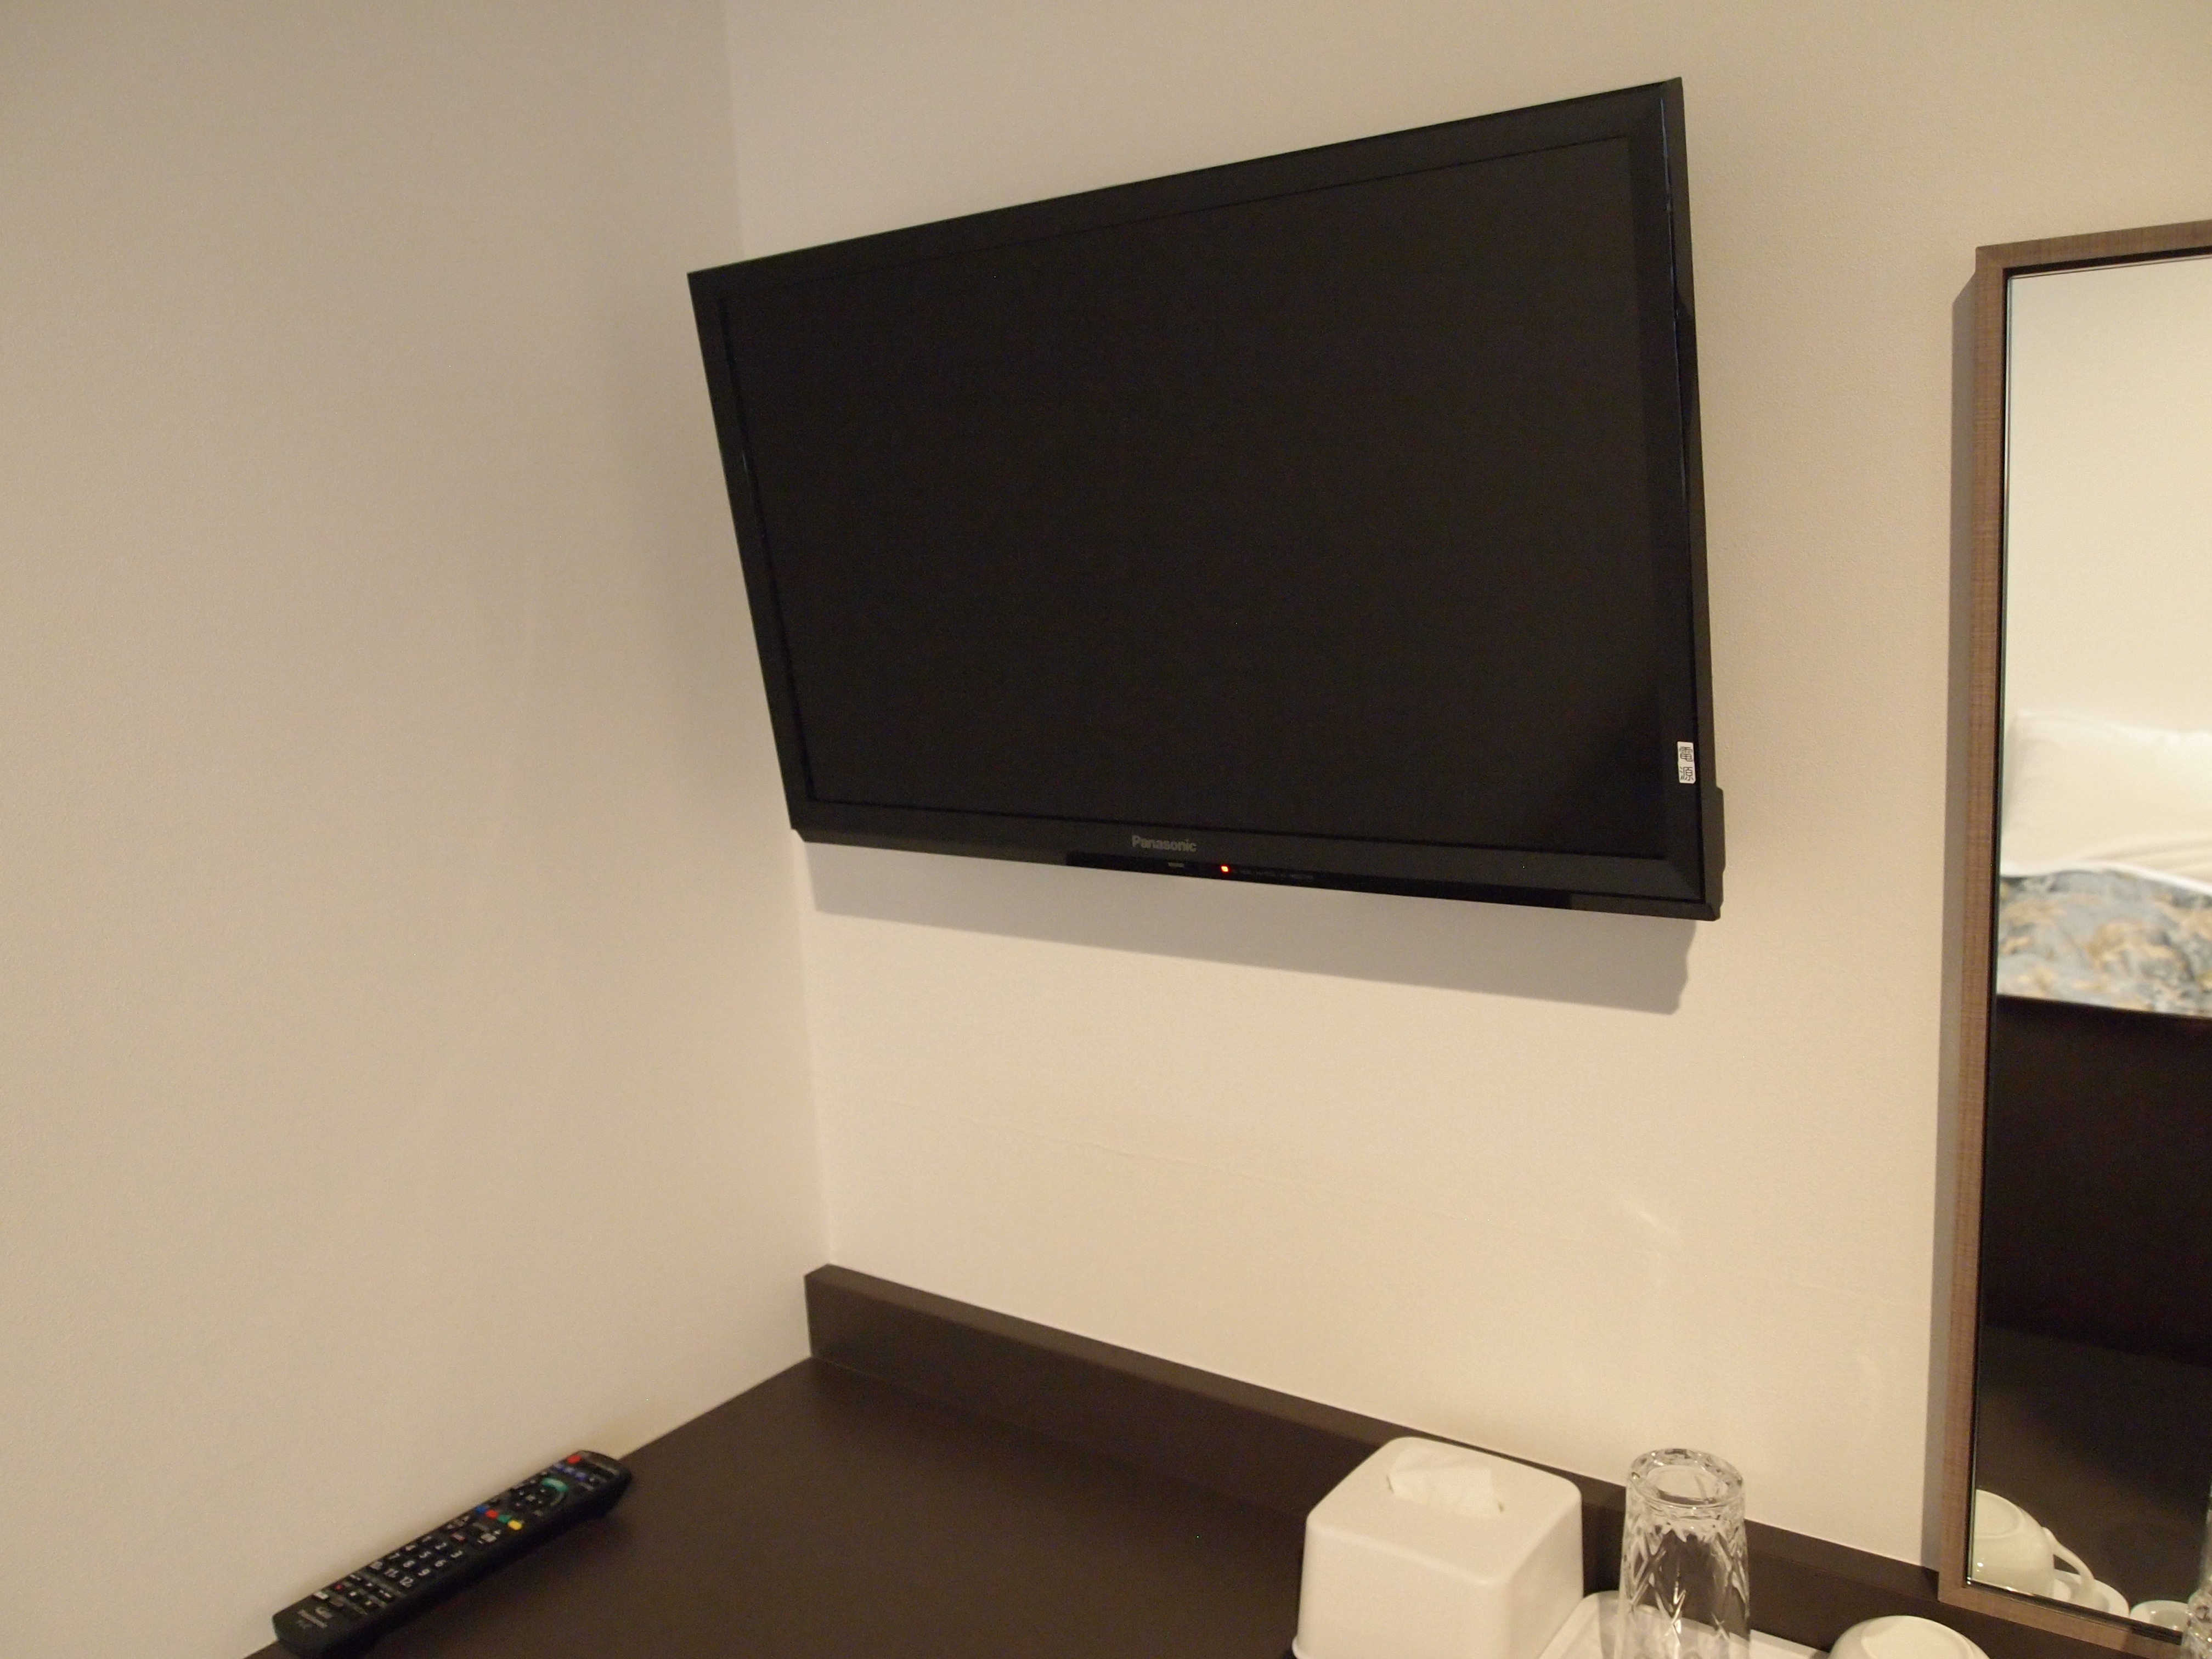 [Wall-mounted TV]